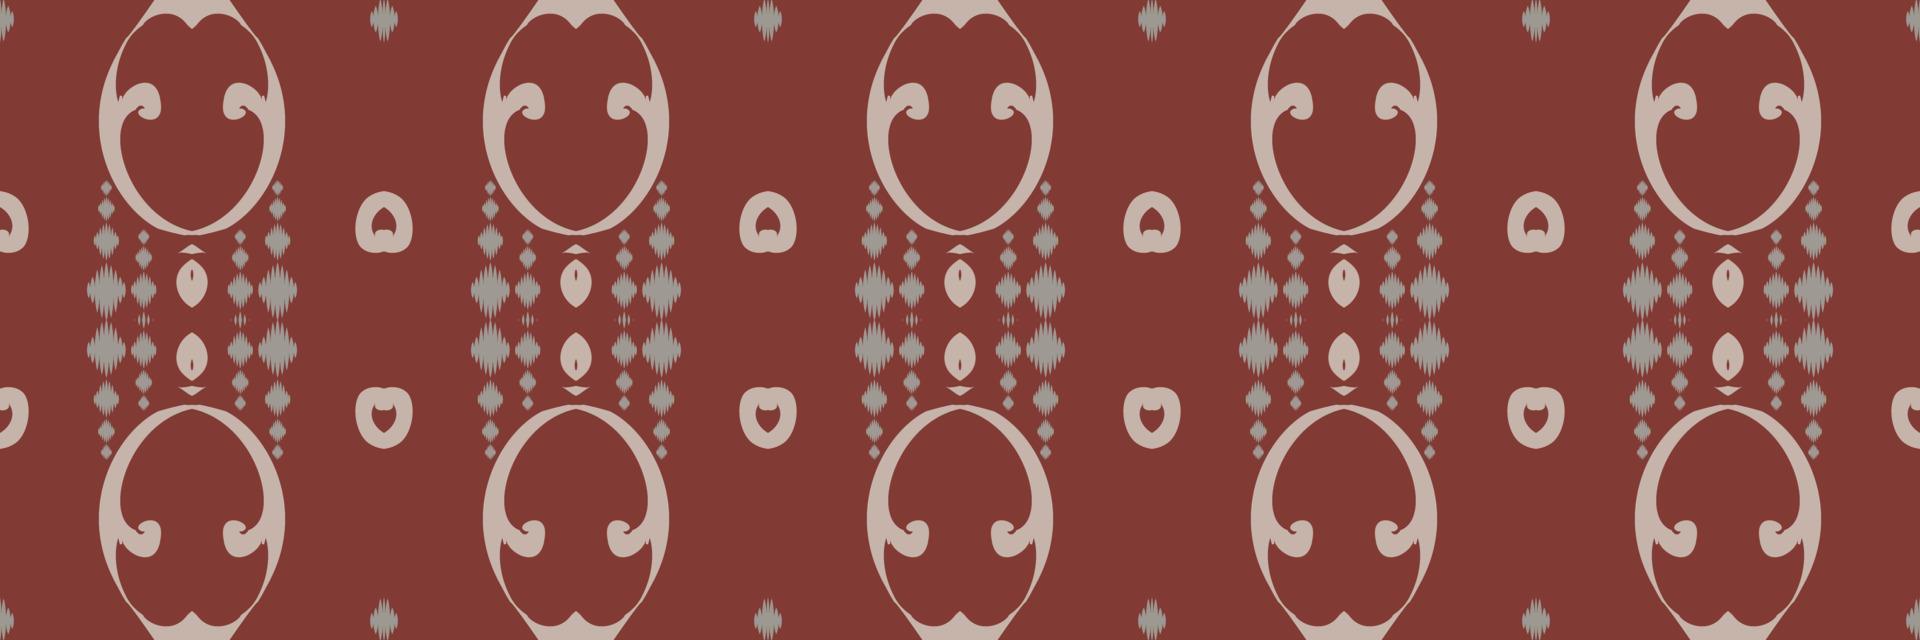 ikkat eller ikat blomma batik textil- sömlös mönster digital vektor design för skriva ut saree kurti borneo tyg gräns borsta symboler färgrutor fest ha på sig